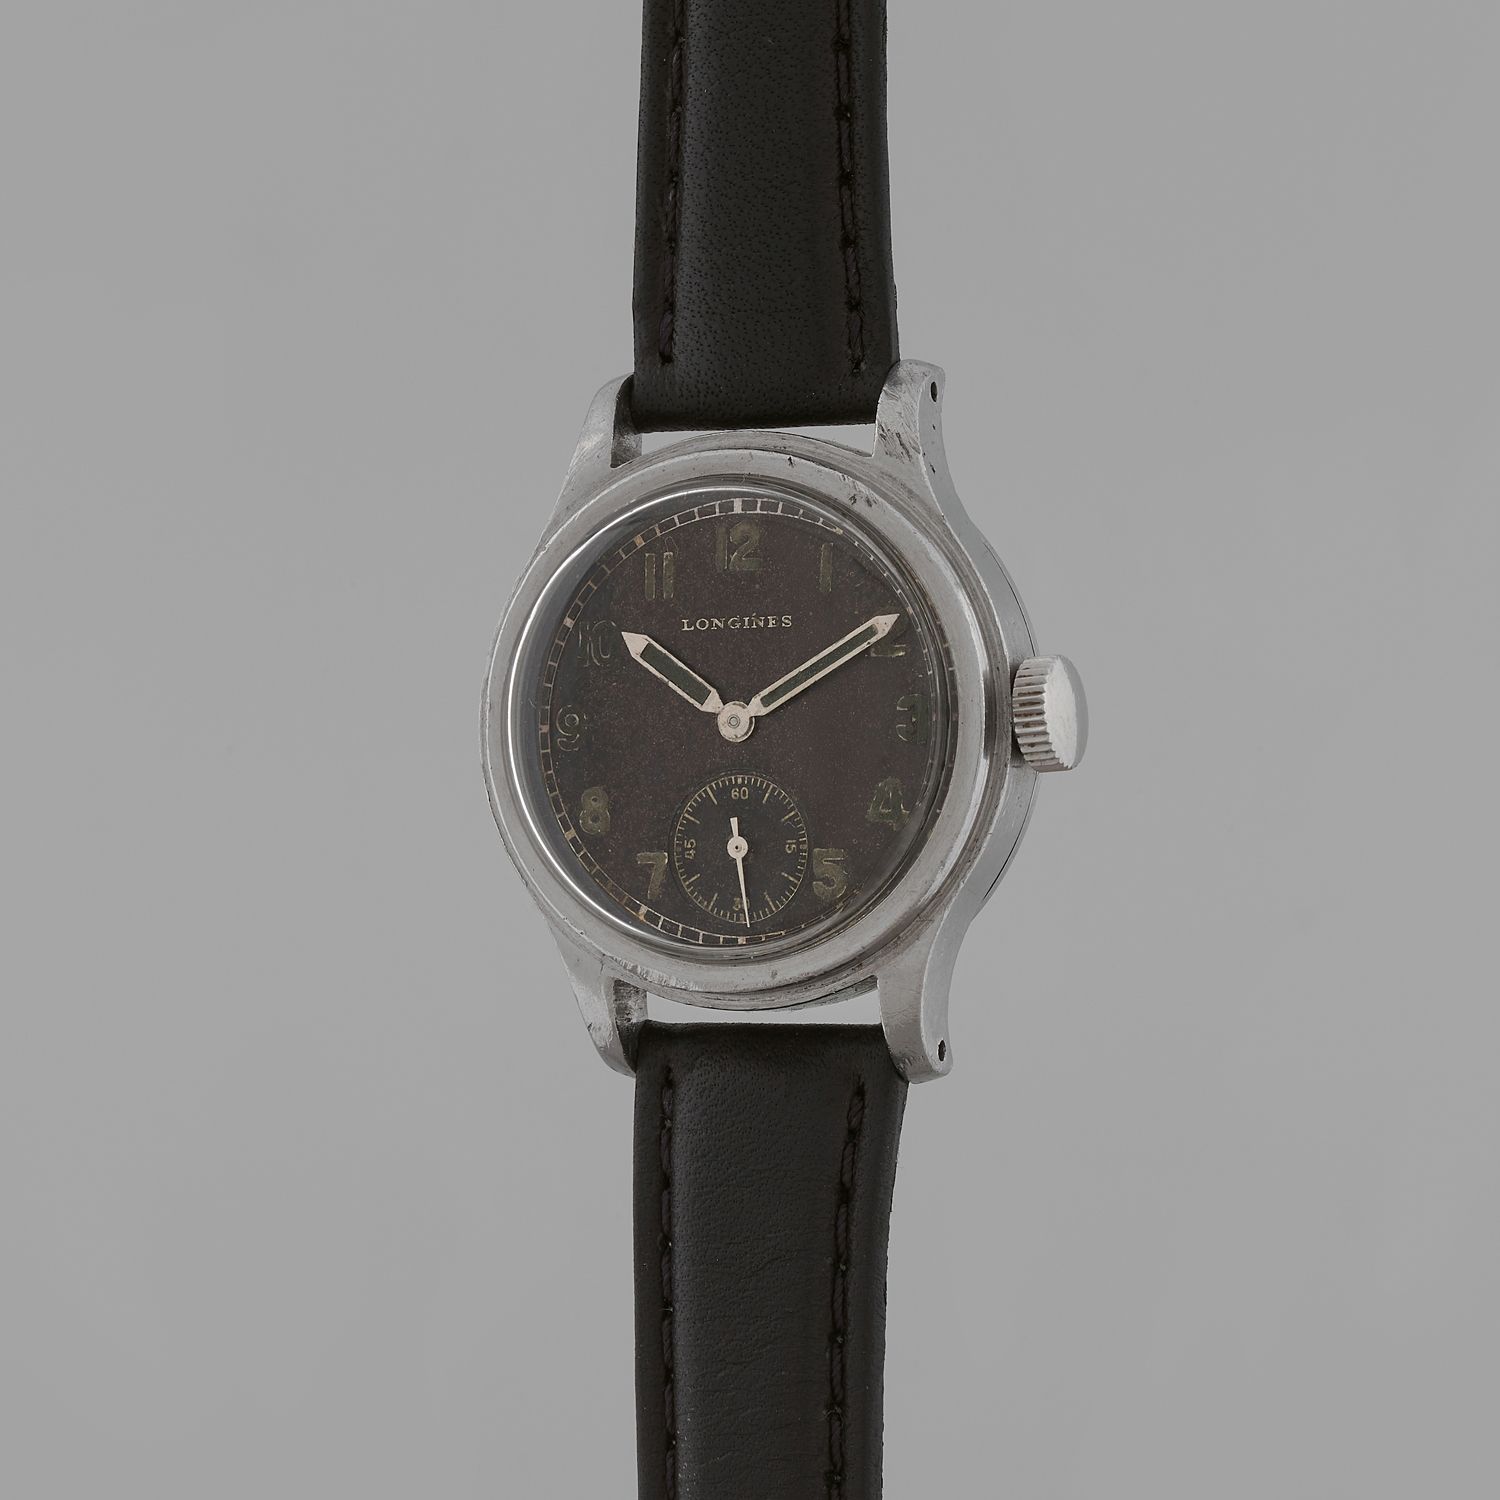 Null *LONGINES
Dienst Heer.
N° : 3092. 
Circa : 1943.
Military type wristwatch. &hellip;